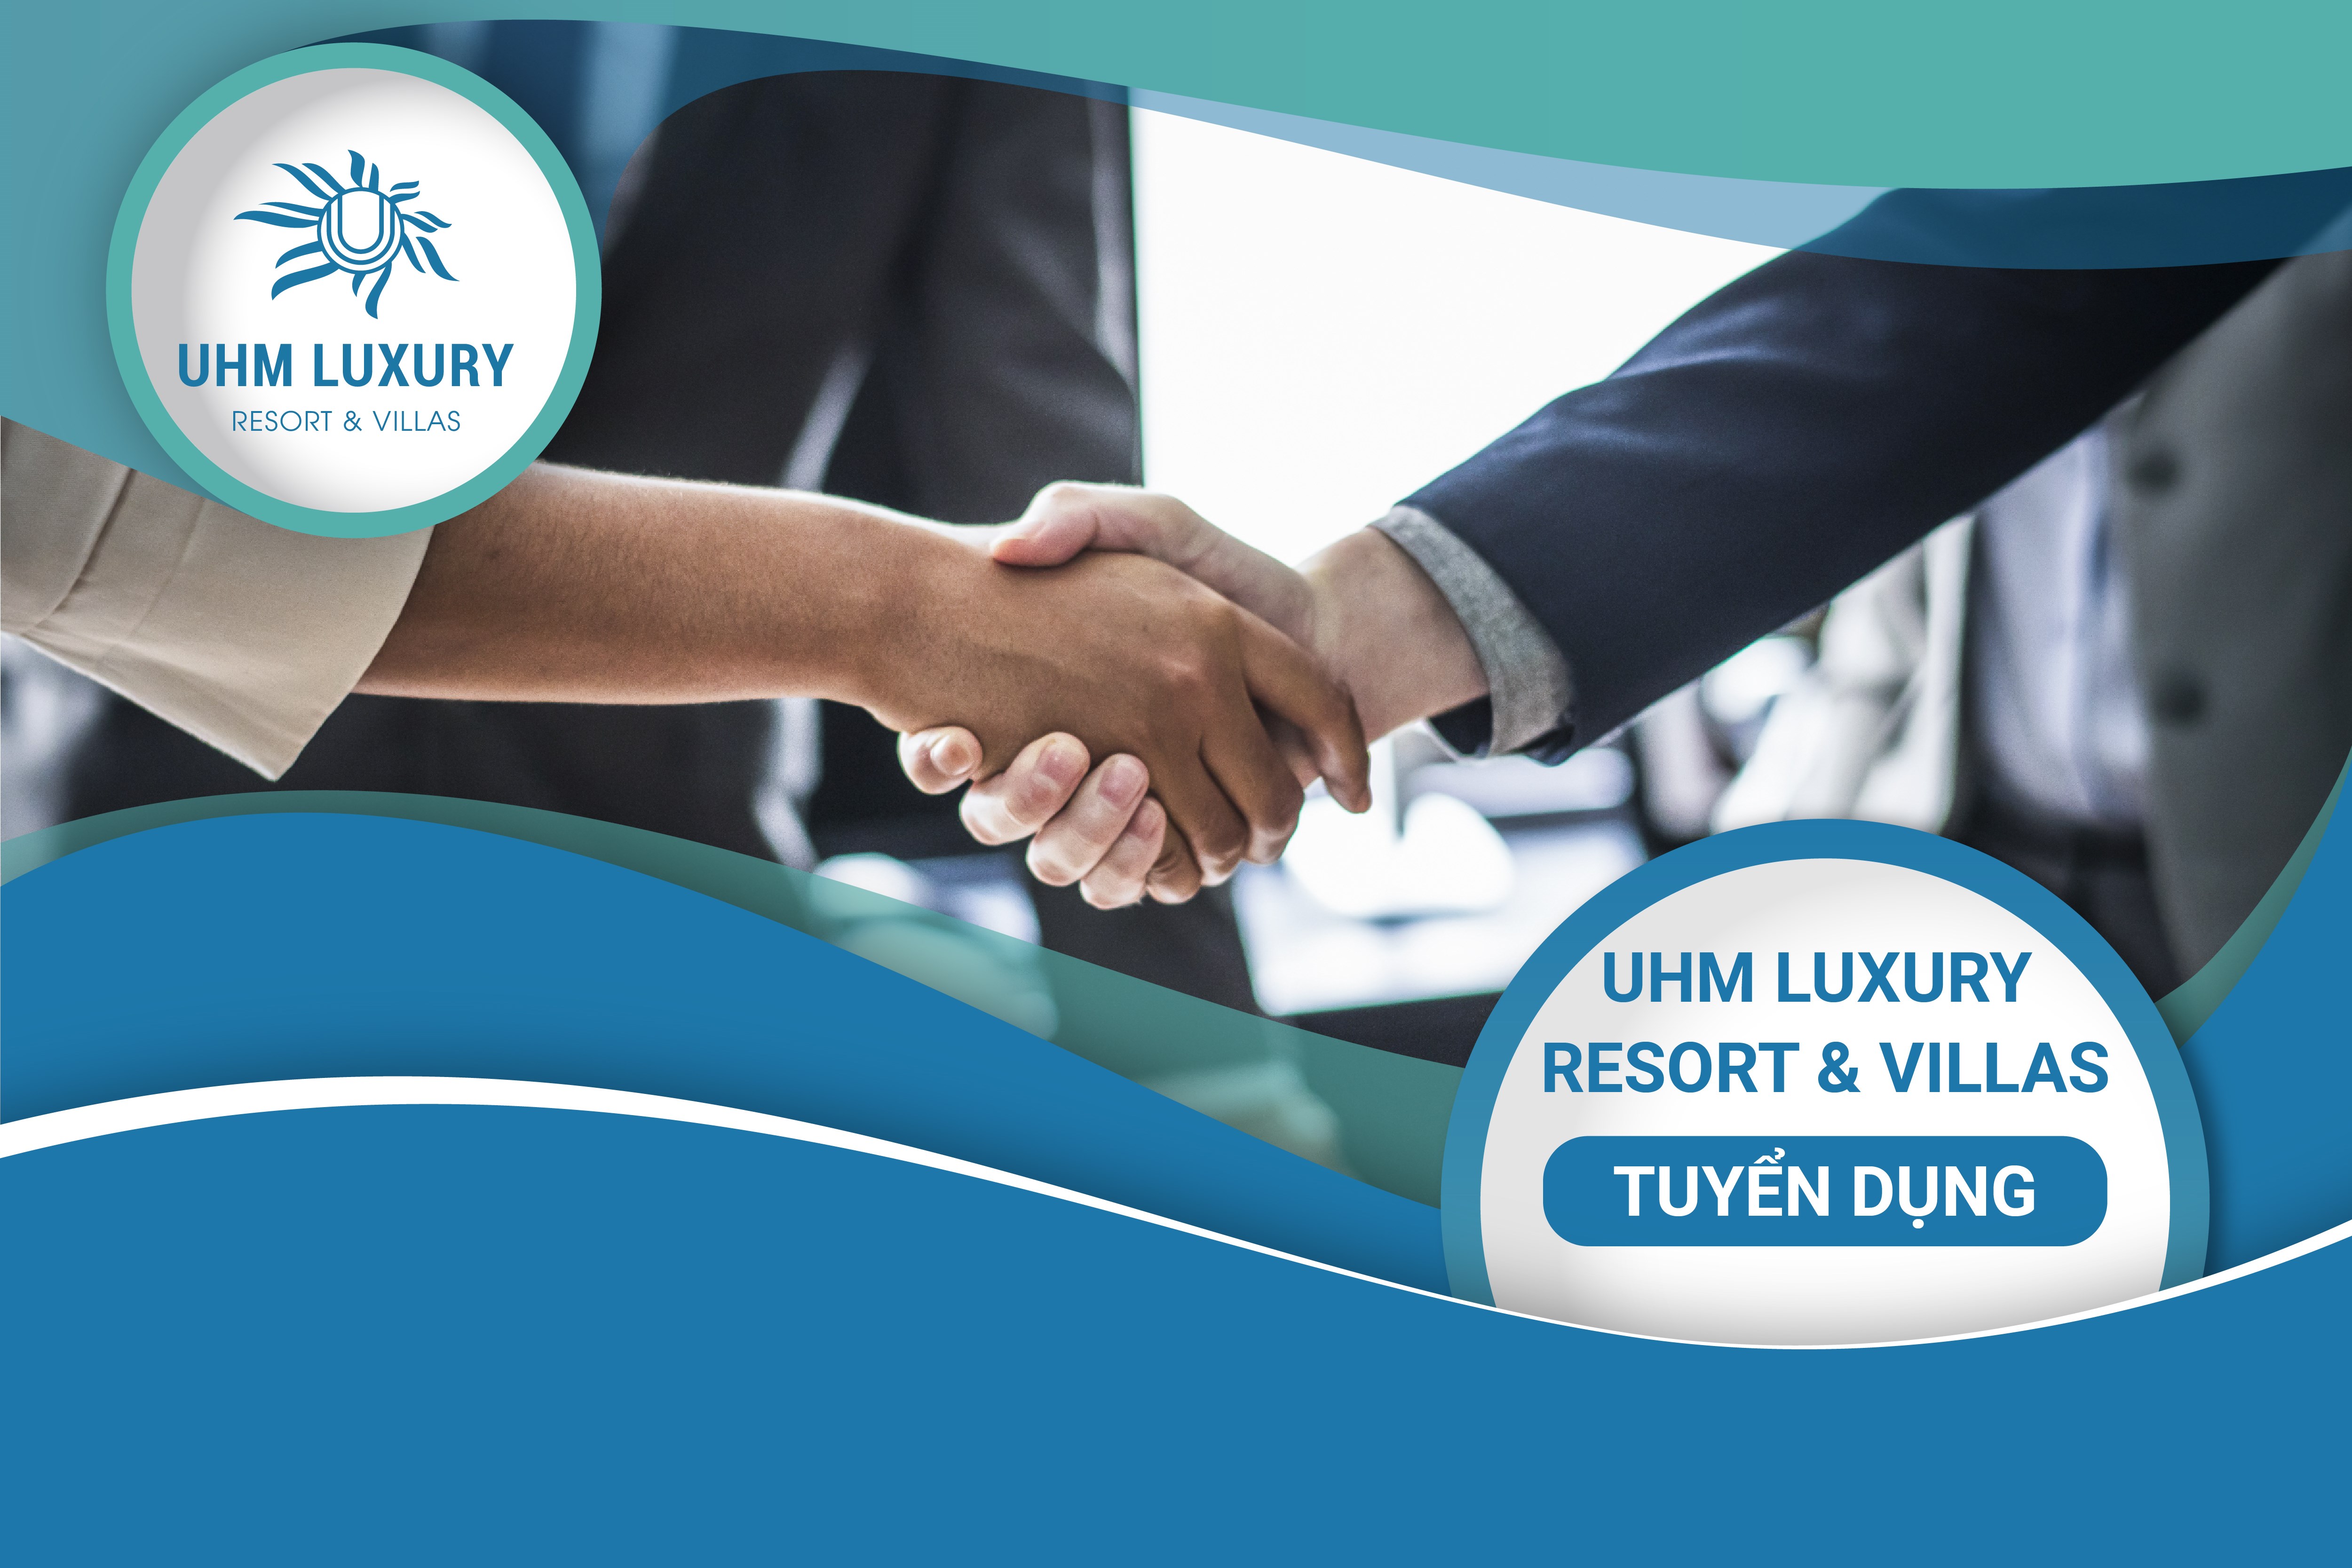 UHM Group tuyển dụng tại Khu nghỉ dưỡng UHM Luxury Resort & Villas Vũng Tàu